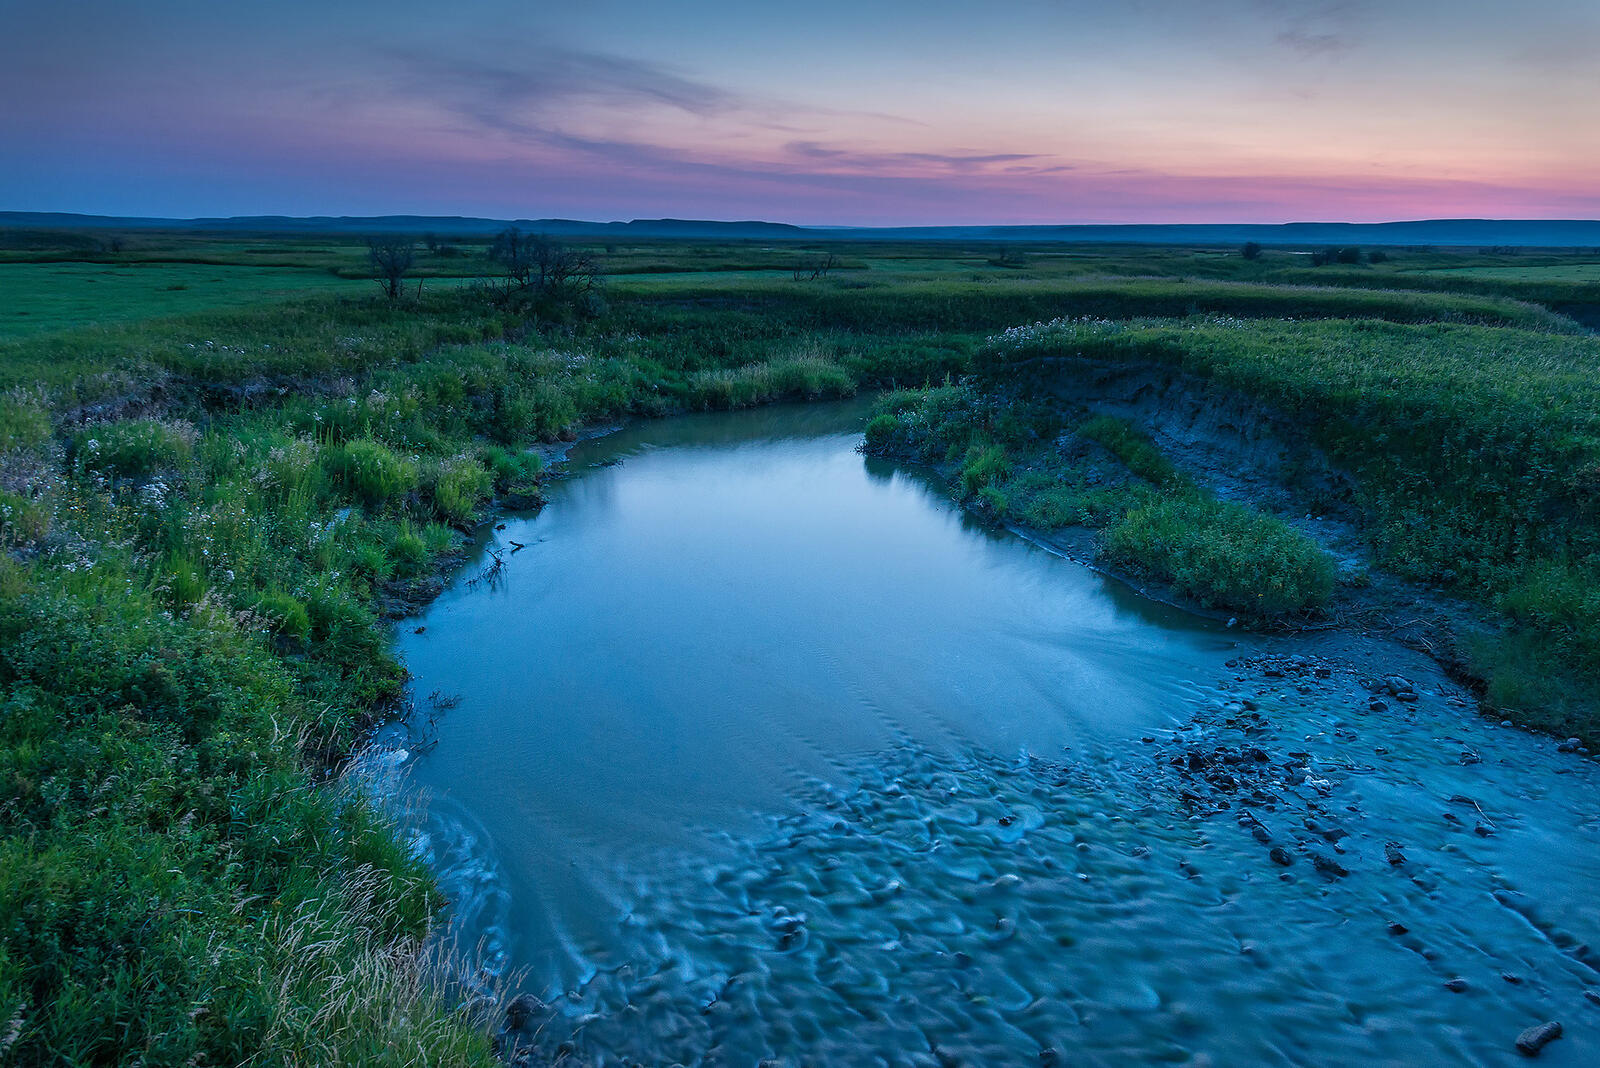 Wallpapers French river grasslands national Park Saskatchewan on the desktop